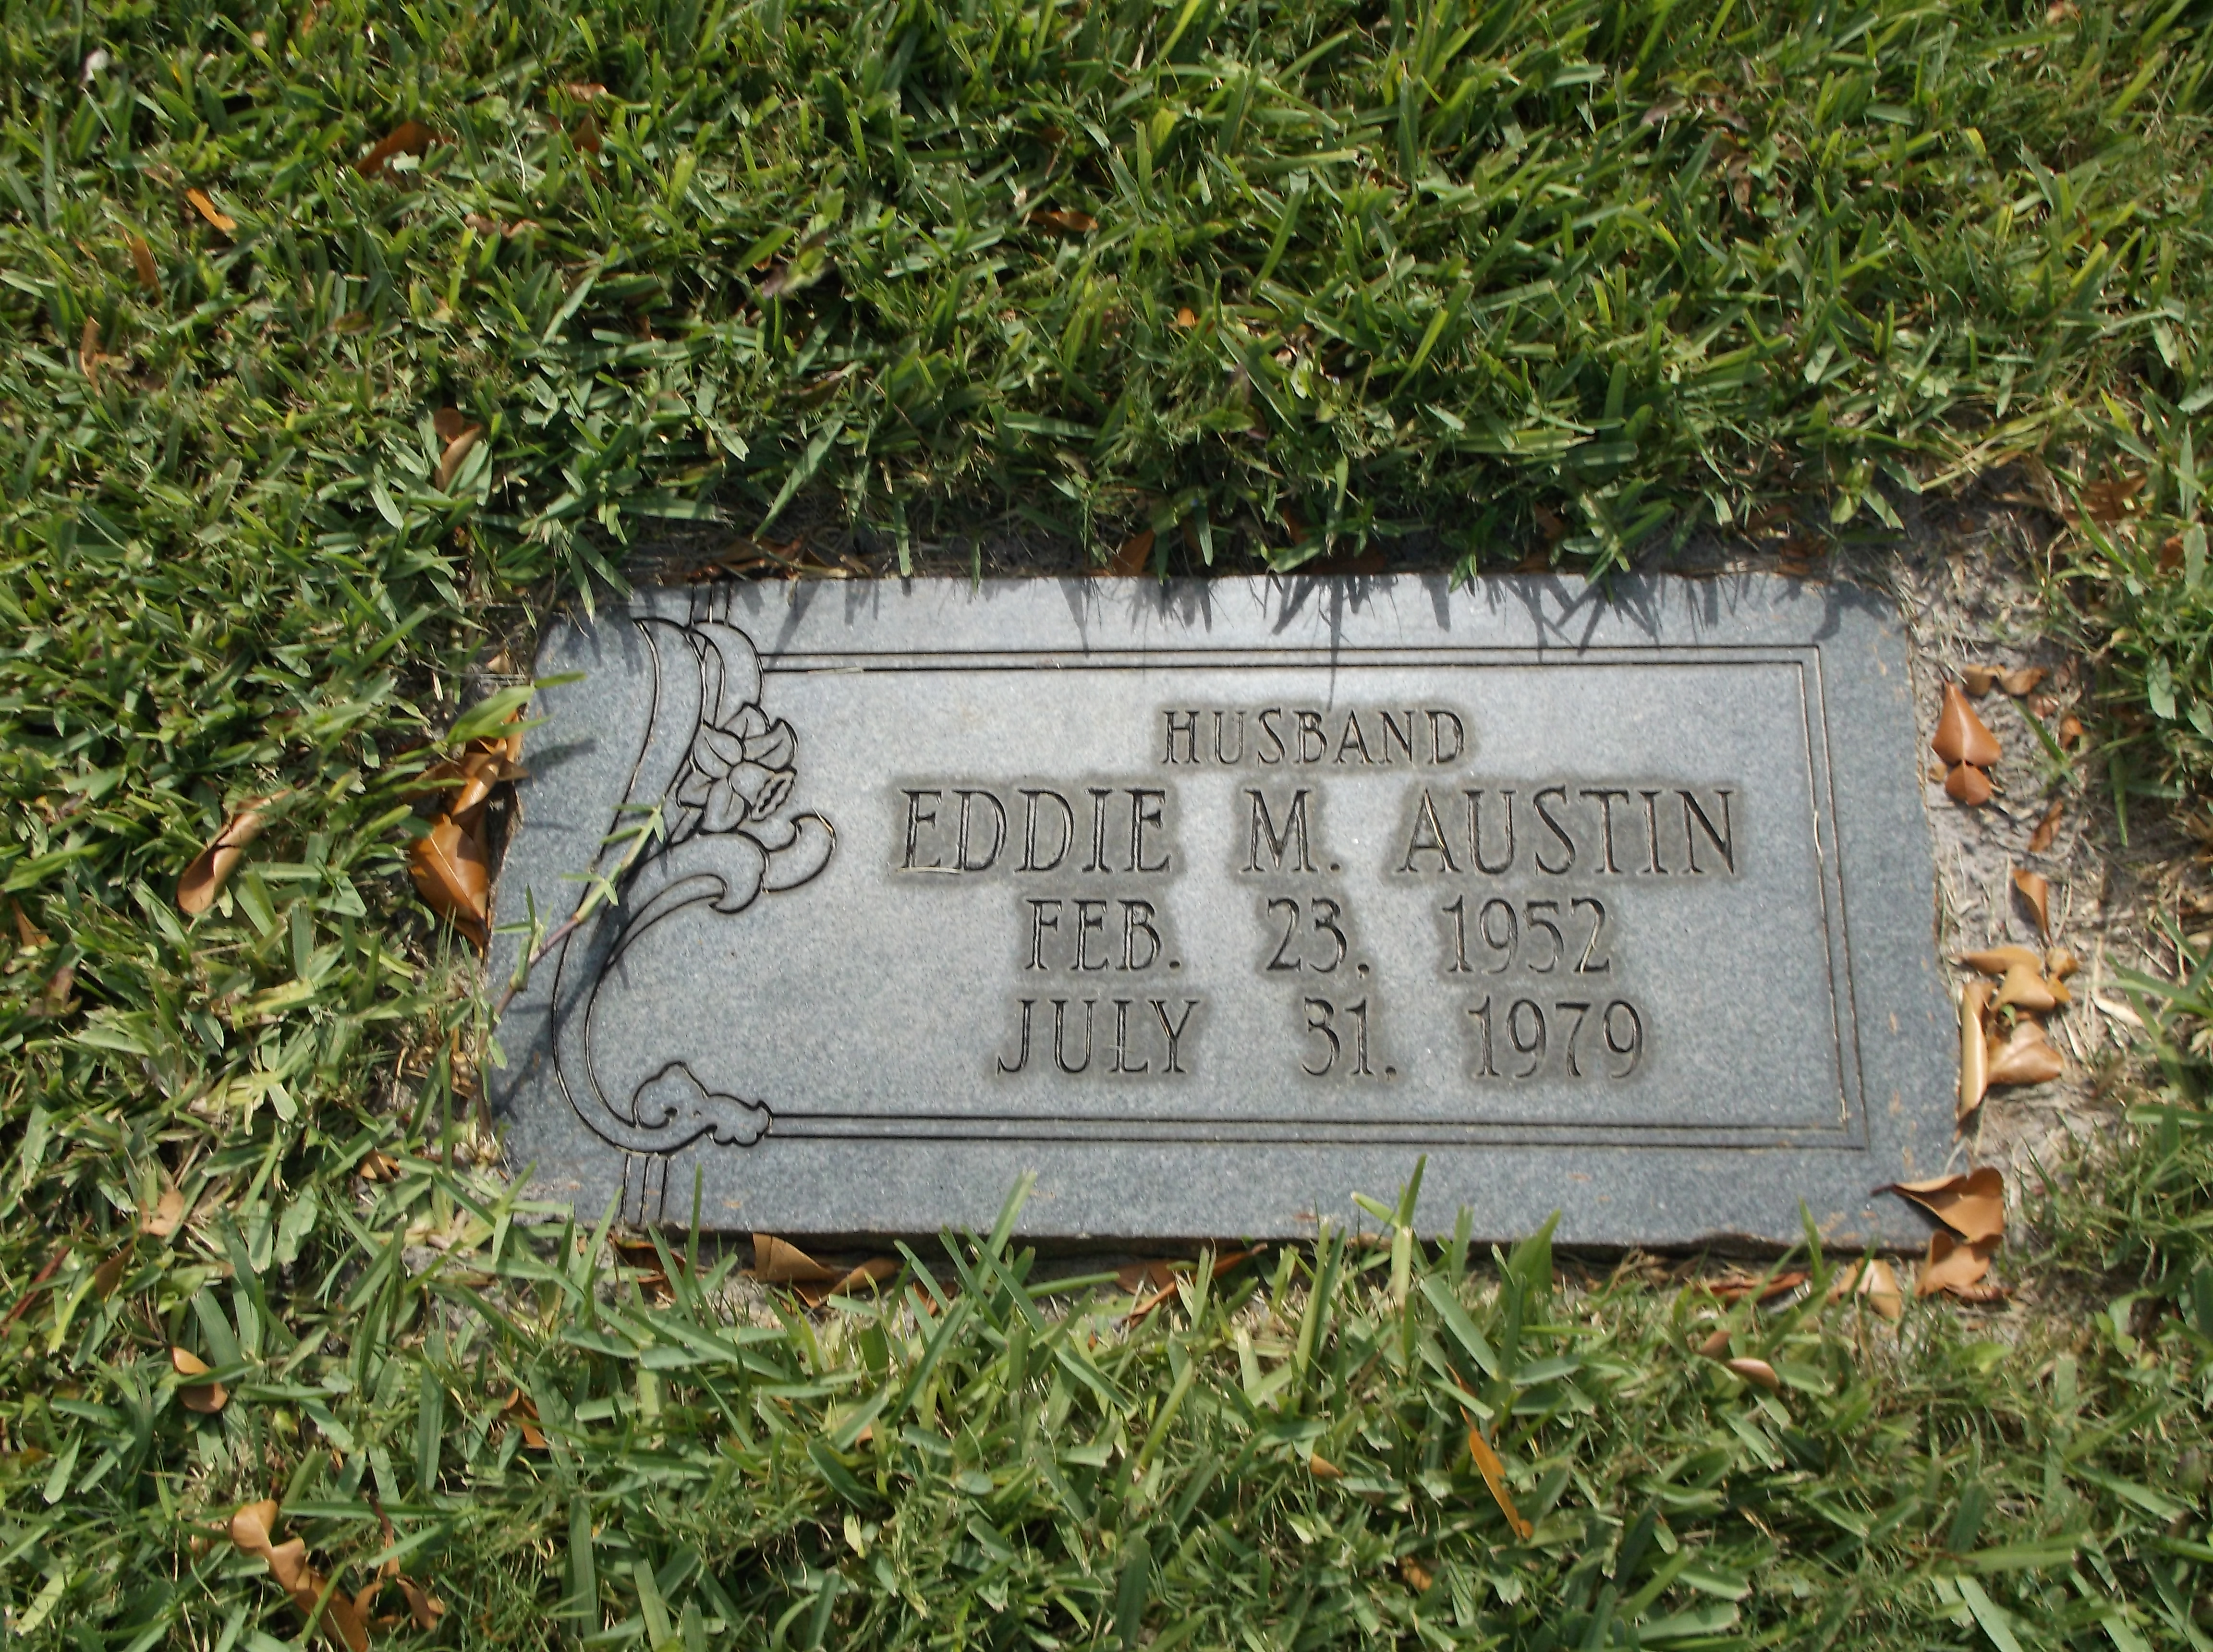 Eddie M Austin